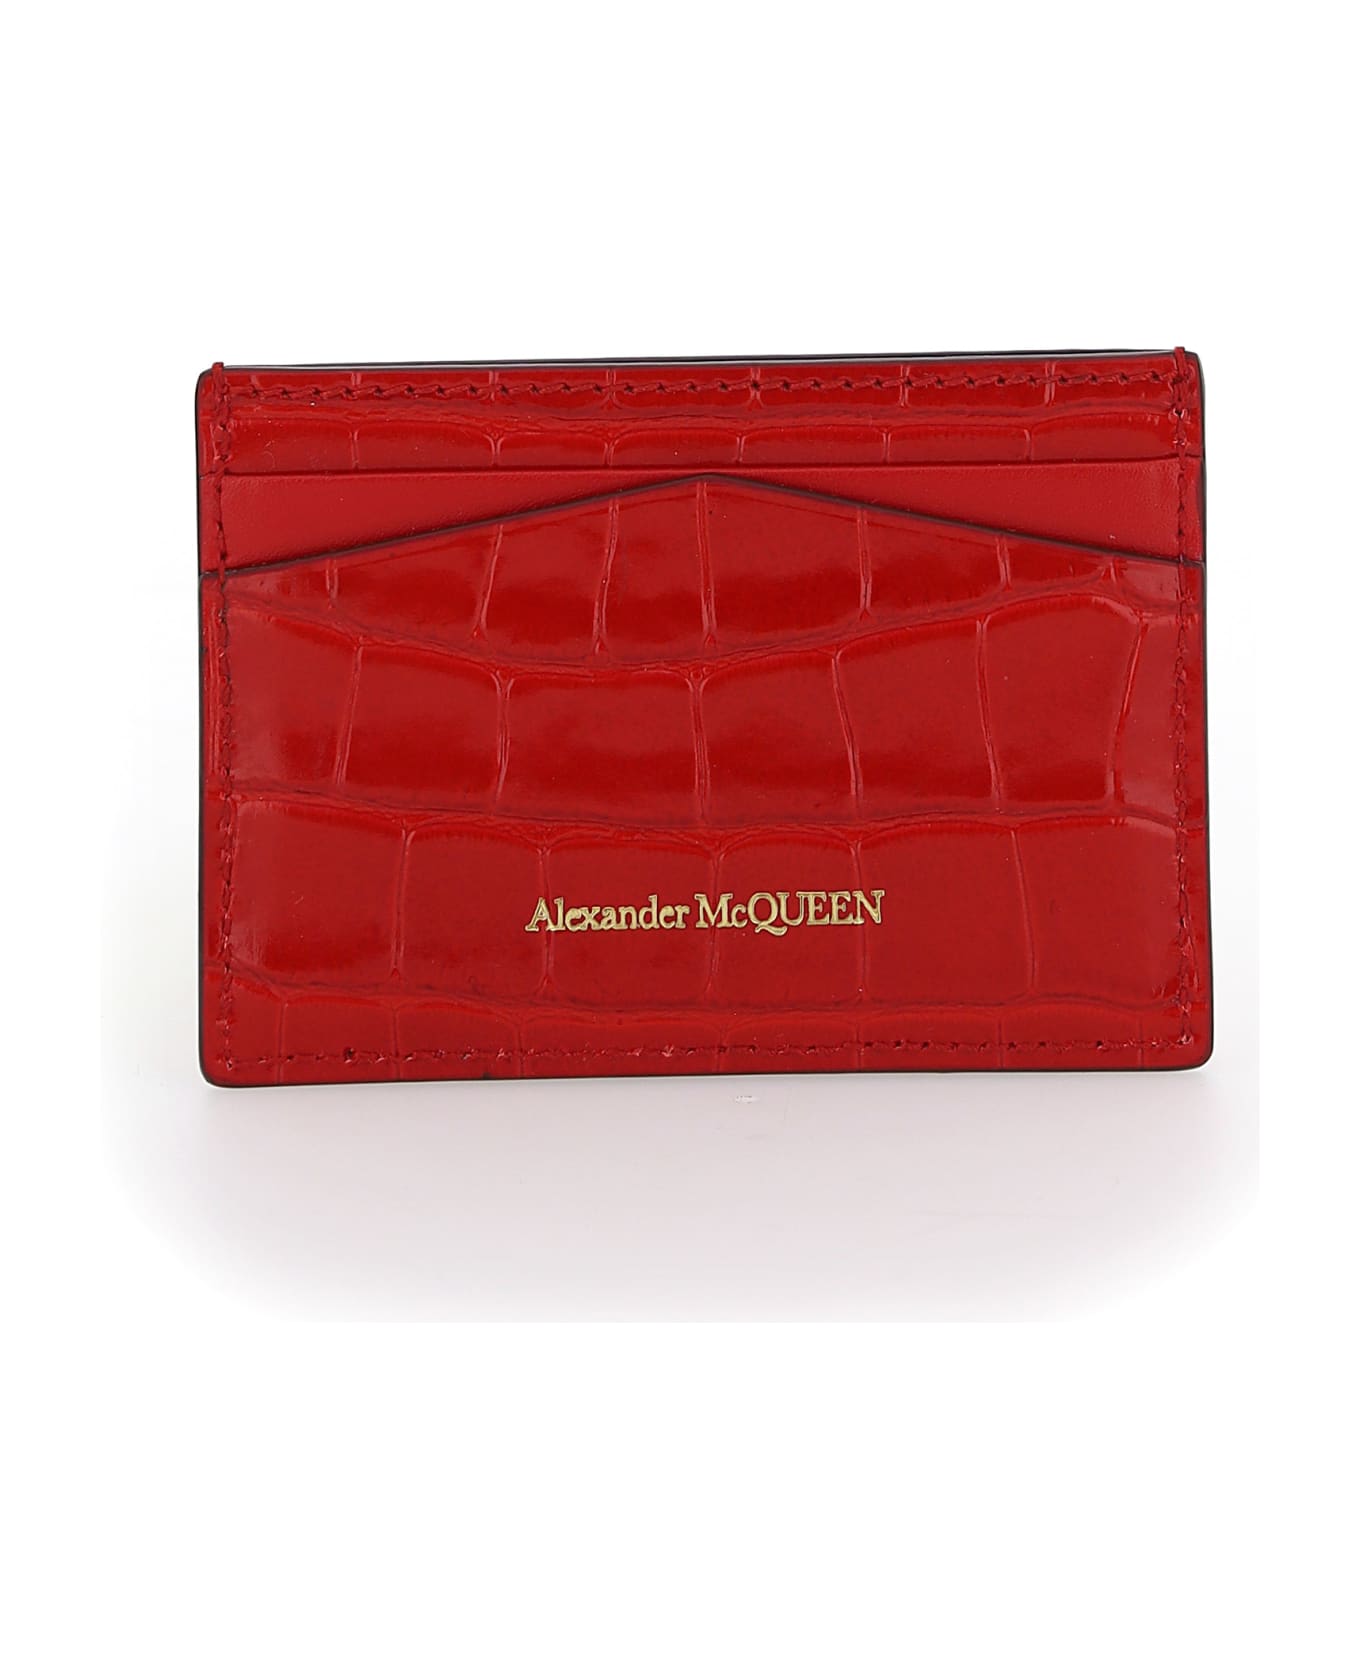 Alexander McQueen Card Holder - Deep red